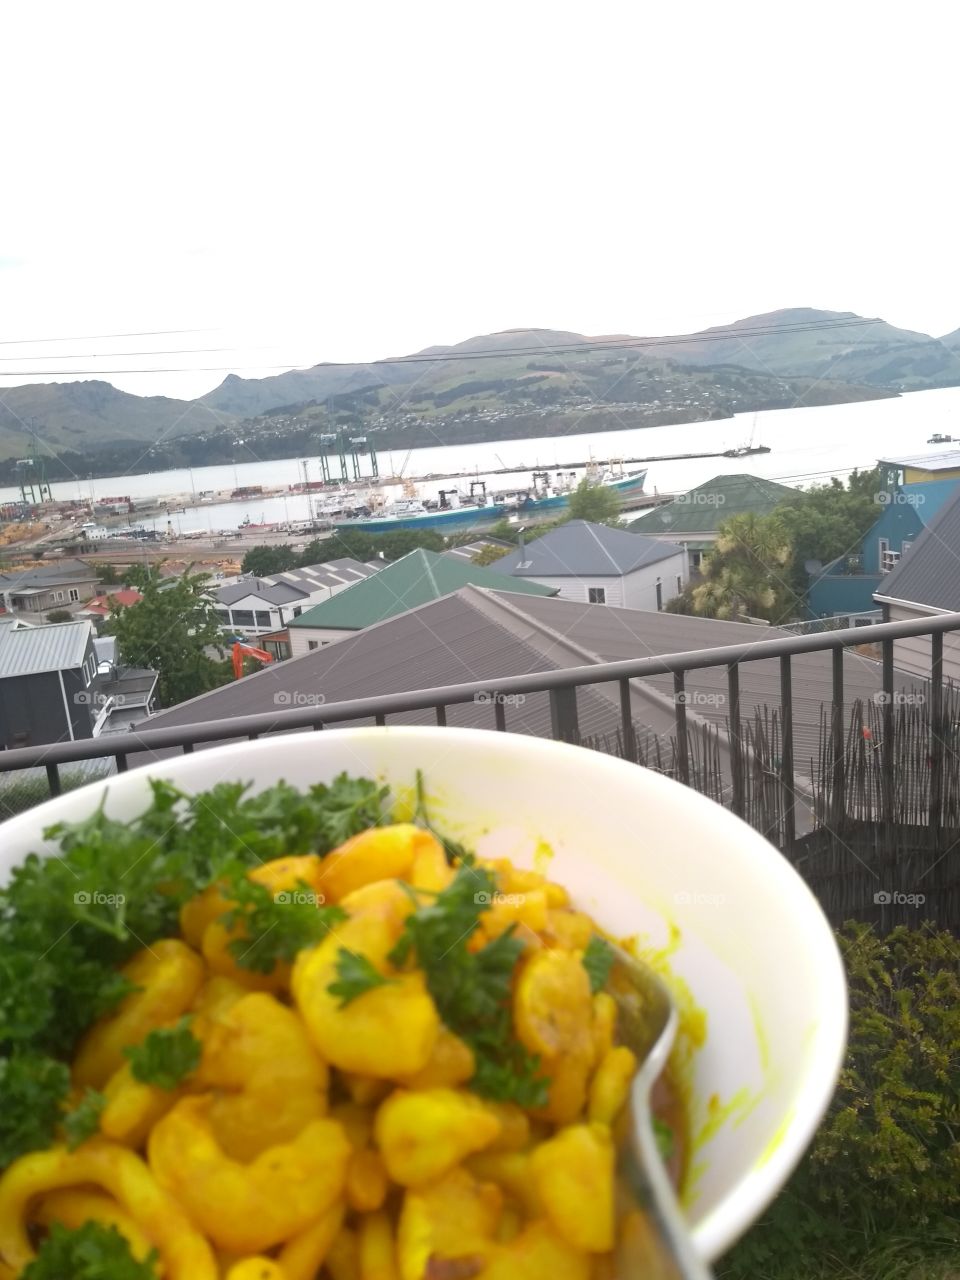 shrimp noodles with a view